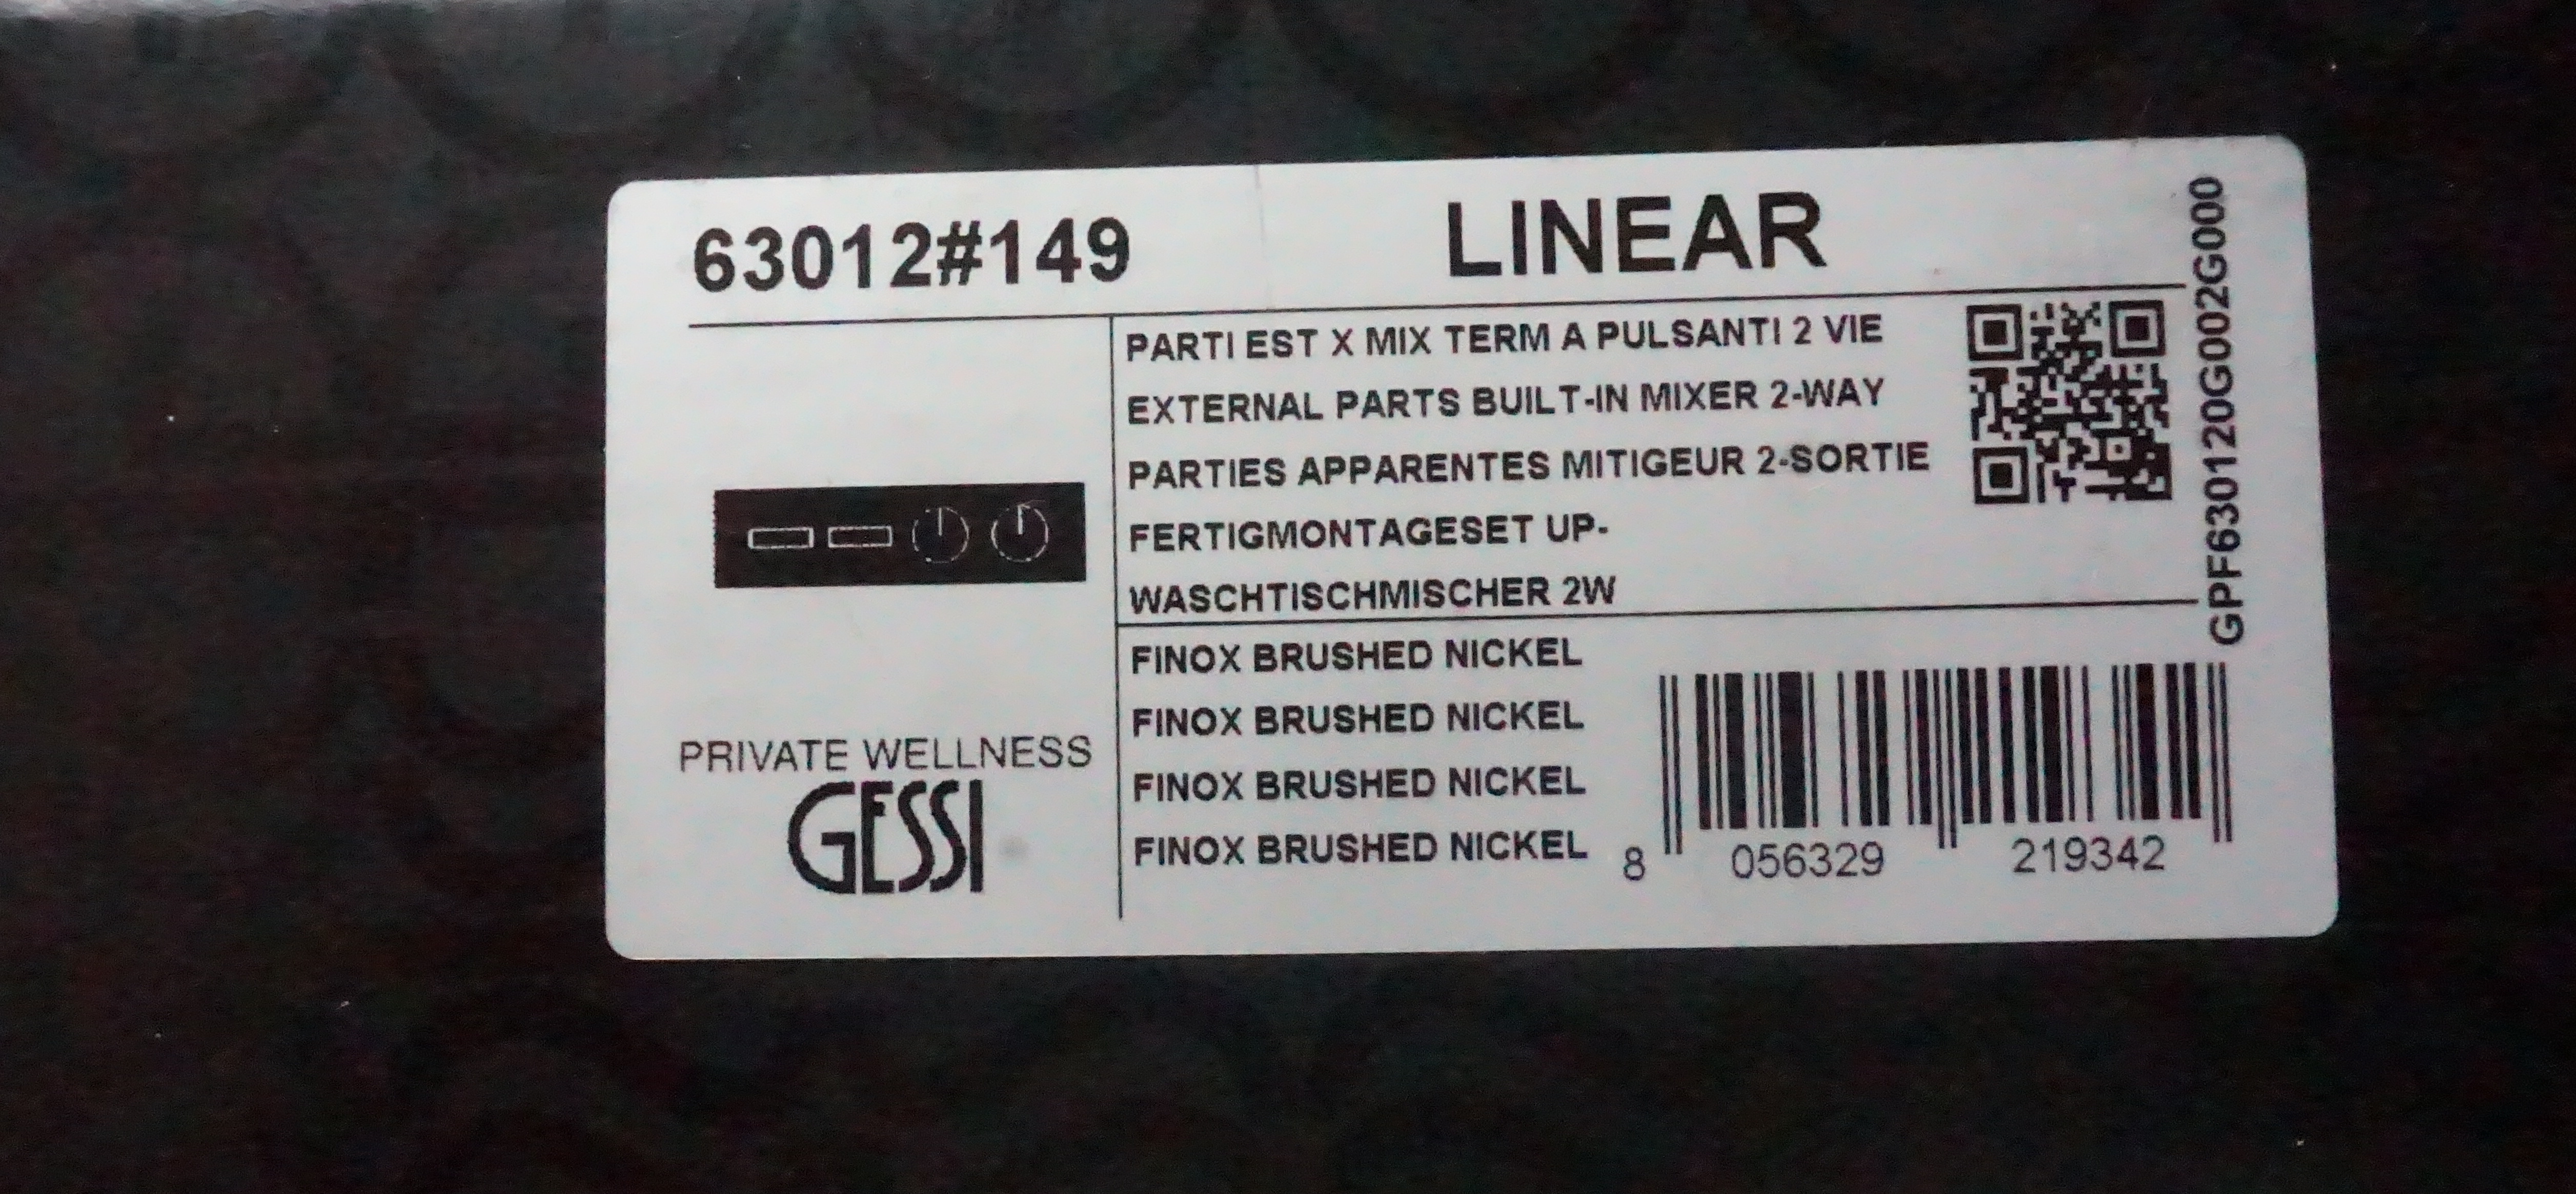 Gessi HI-FI Linear Fertigmontageset 63018 Finox Optik für Thermostat mit 5 Ausgängen; 63018149 